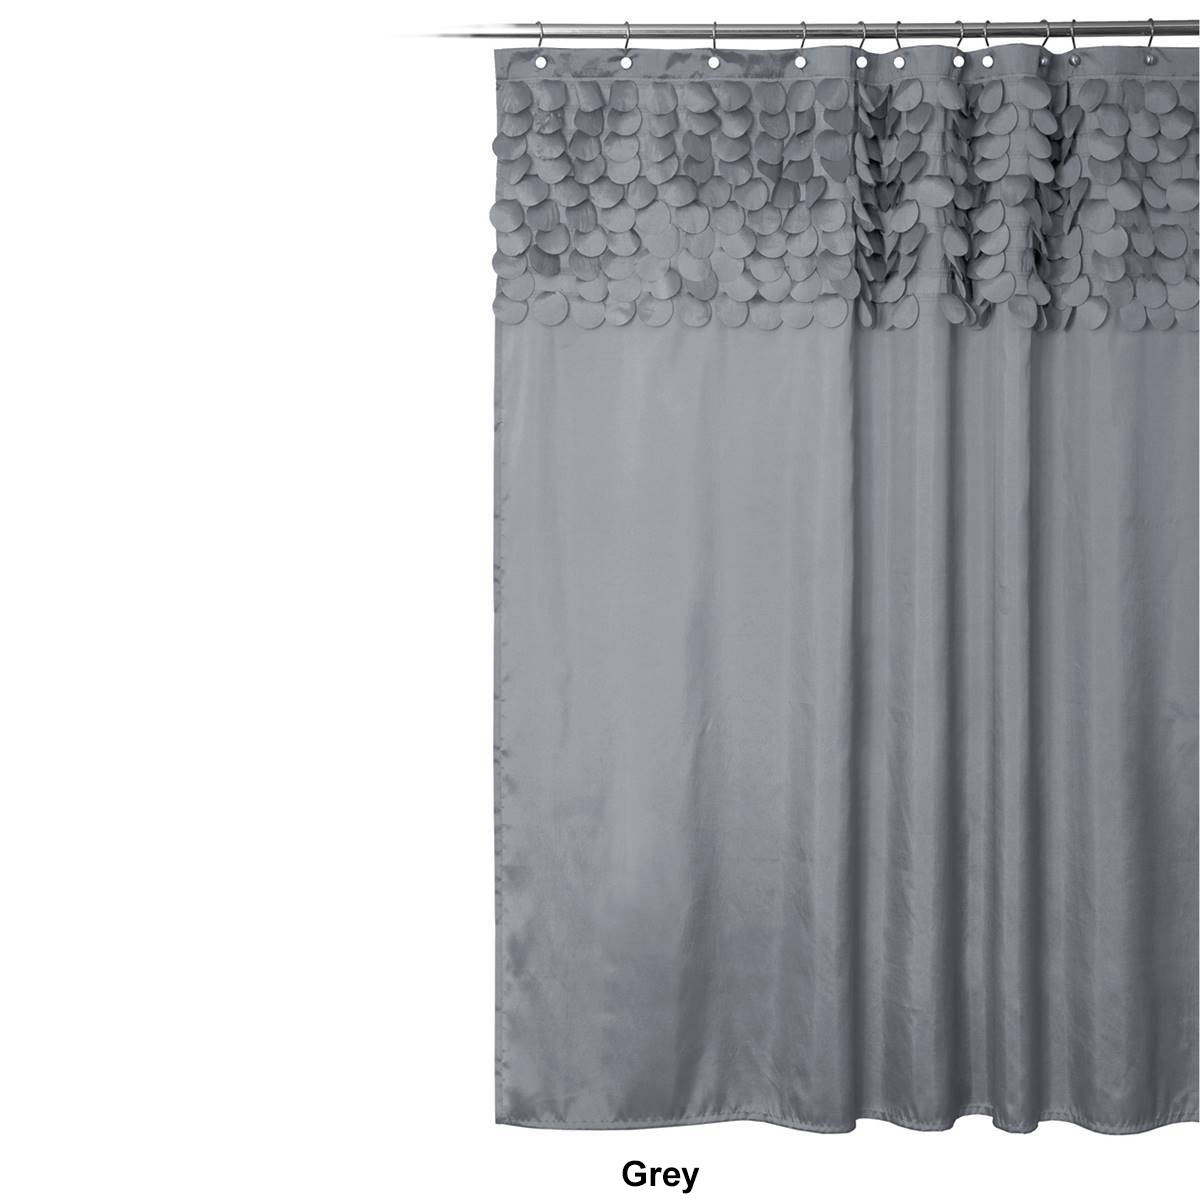 Lush Decor(R) Lillian Shower Curtain